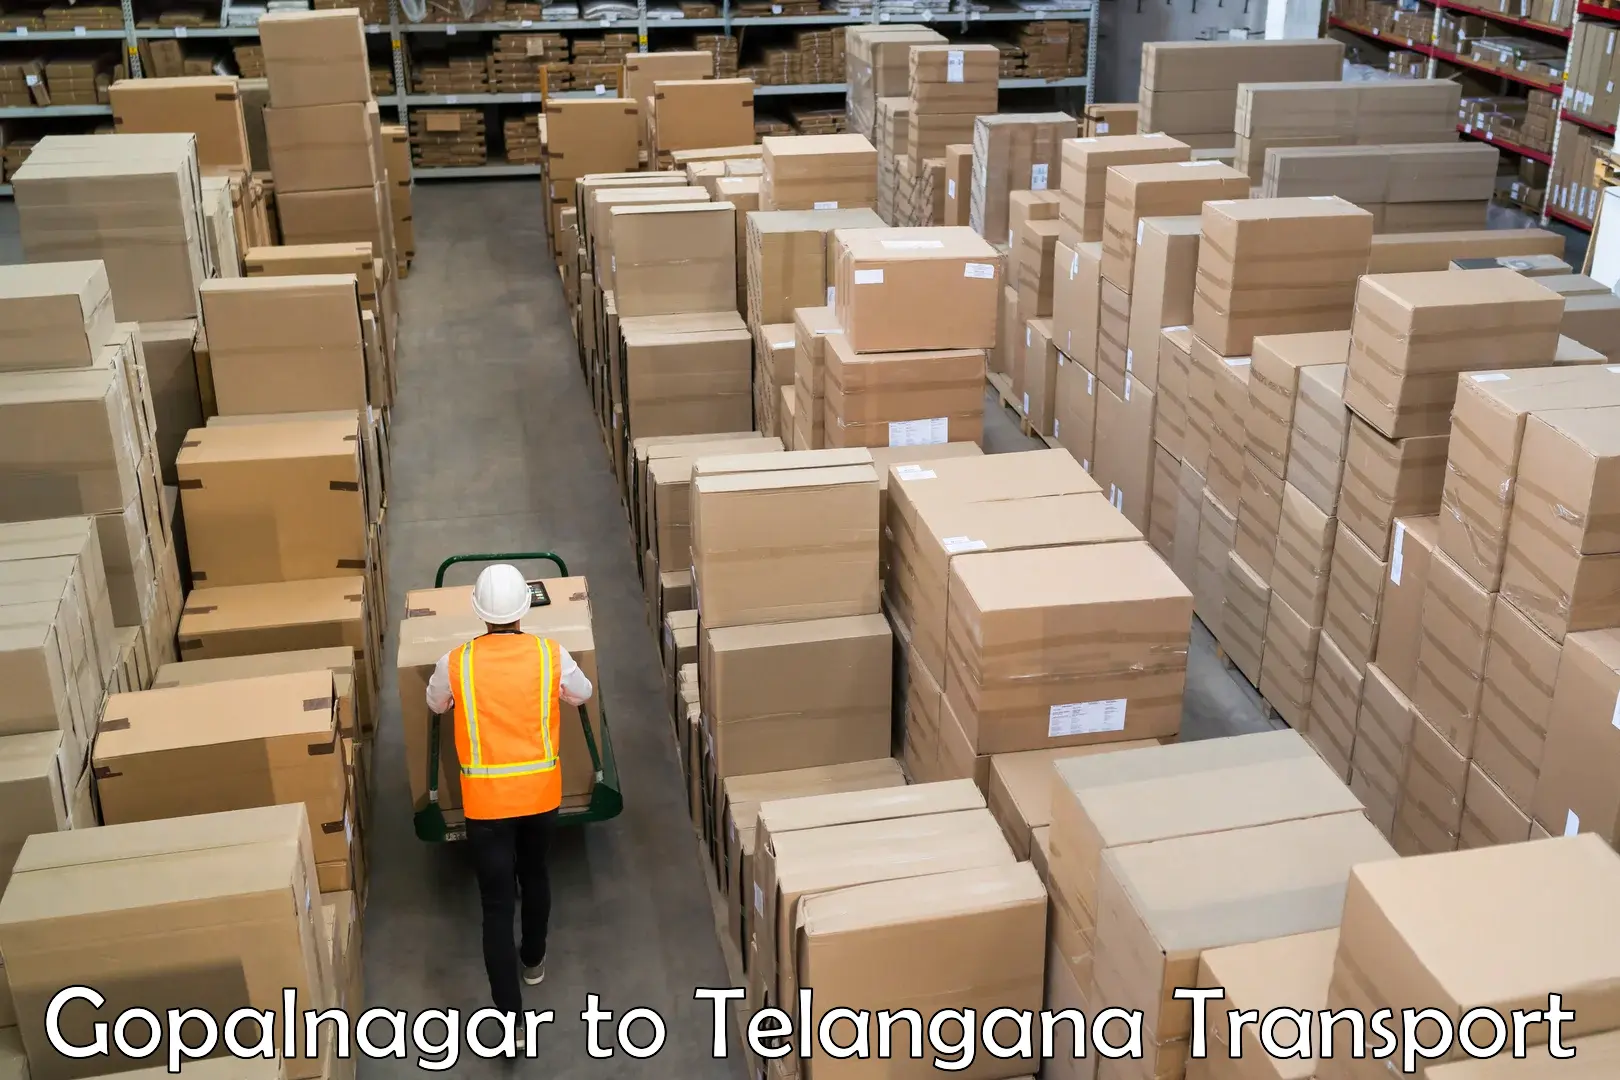 Goods delivery service Gopalnagar to Kamareddy